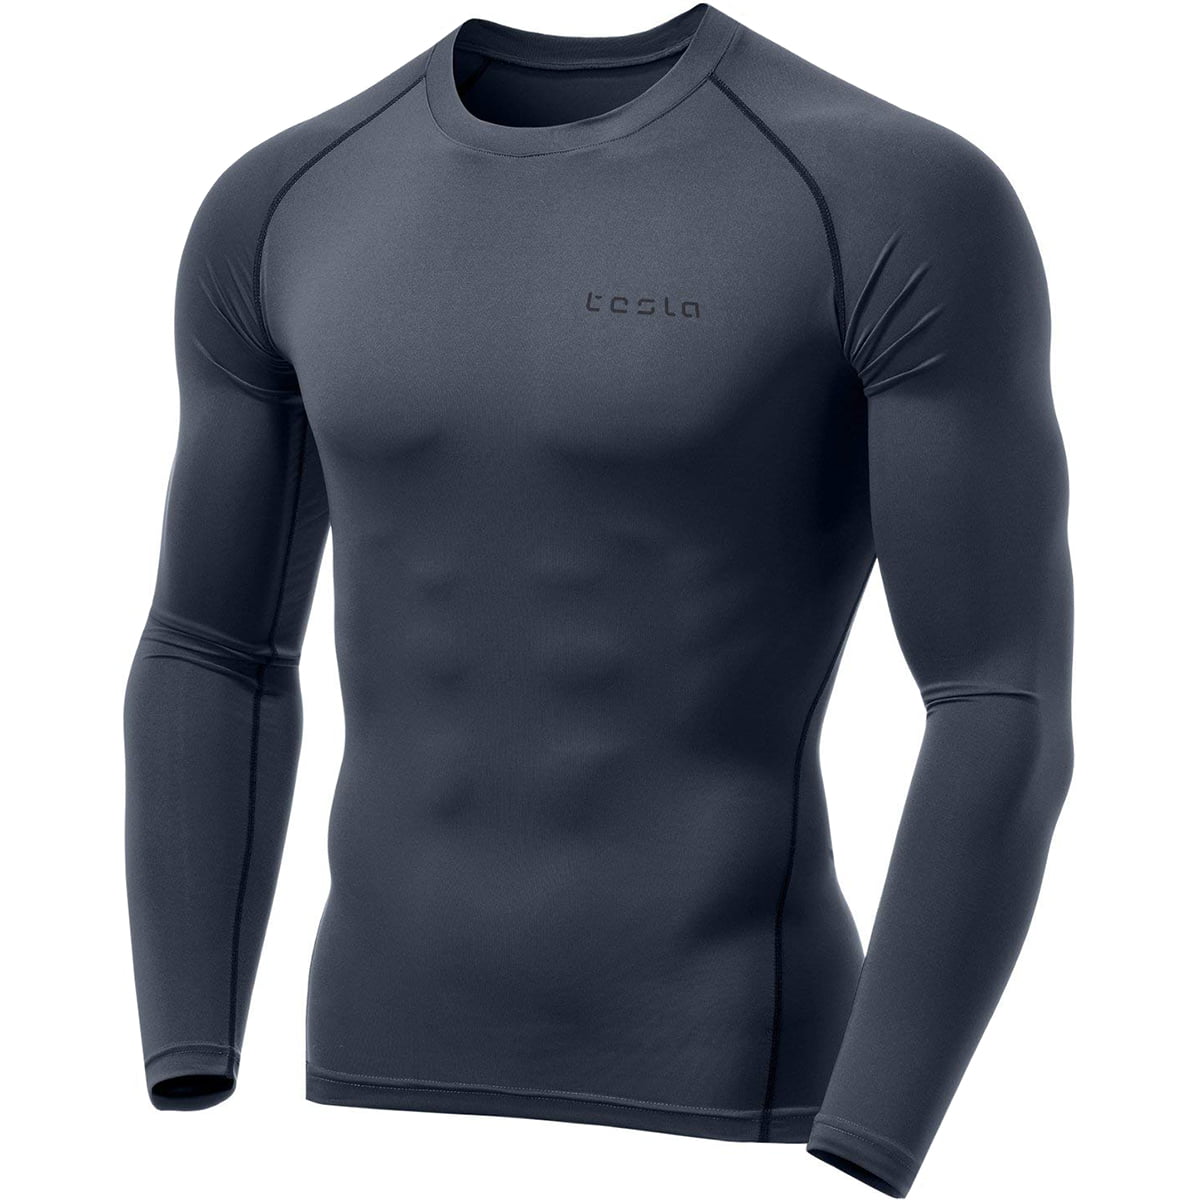 TSLA Tesla Men's Long Sleeve Shirt Cool Dry Compression MUD01 BLUE MED NAVY NEW 